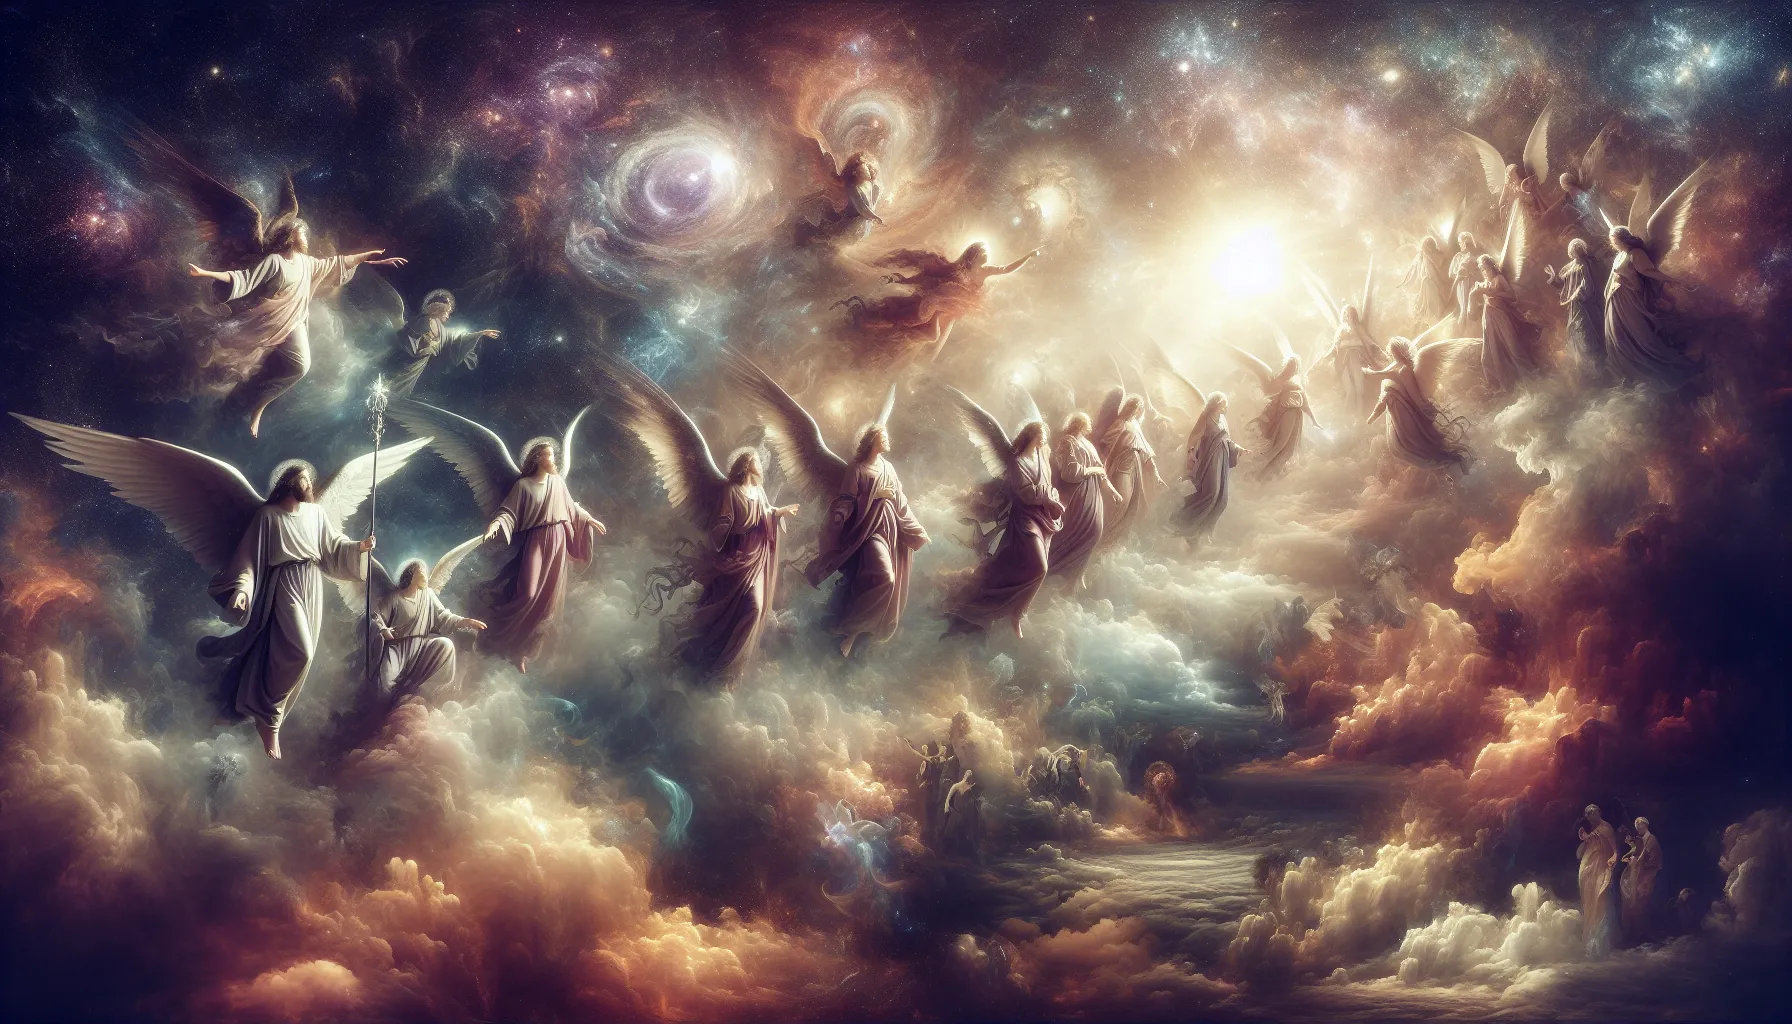 Representación artística de ángeles en una ilustración celeste